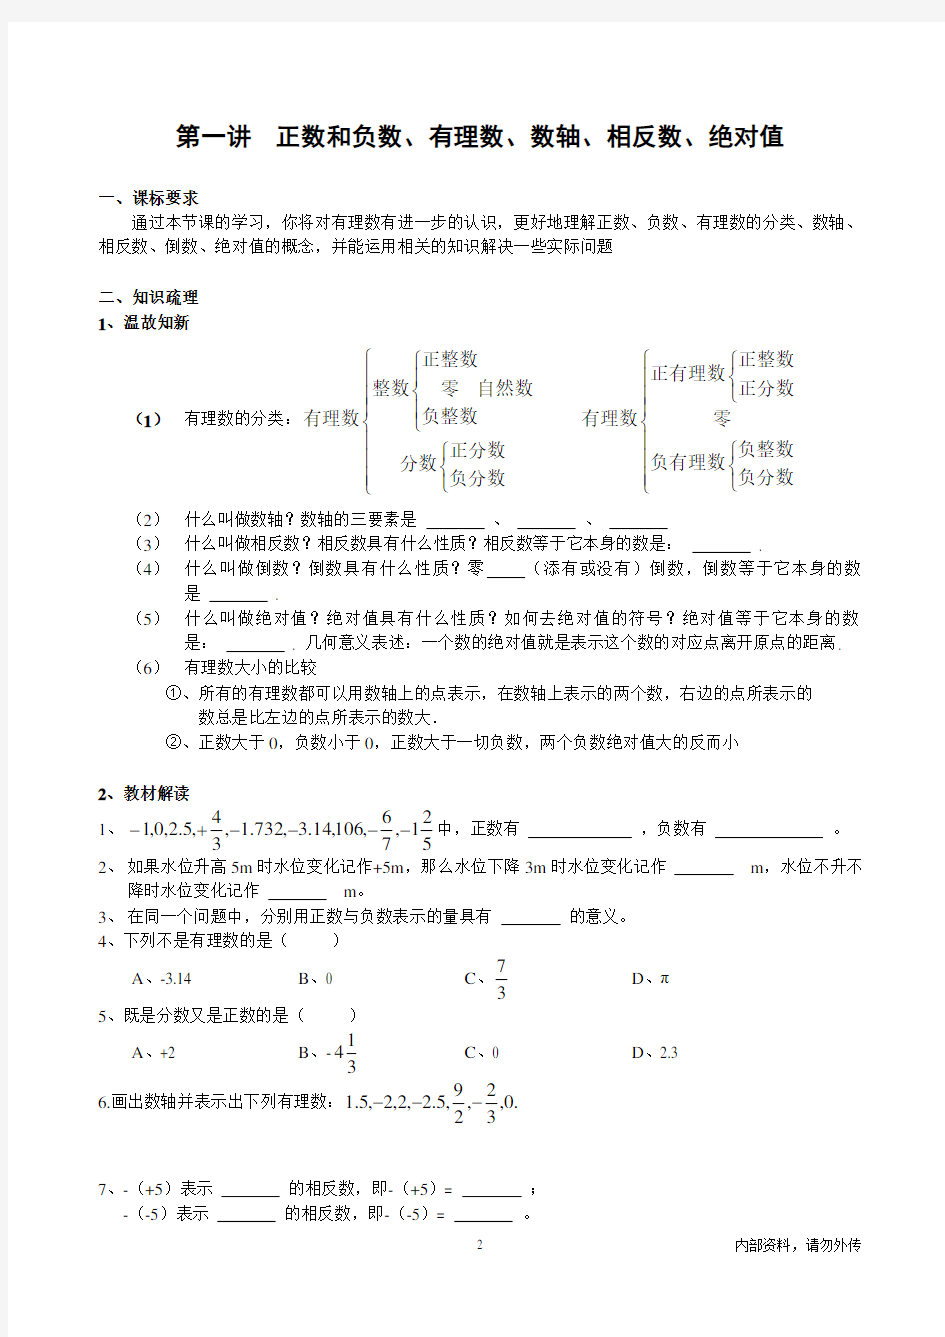 七年级数学竞赛班资料(最新编)